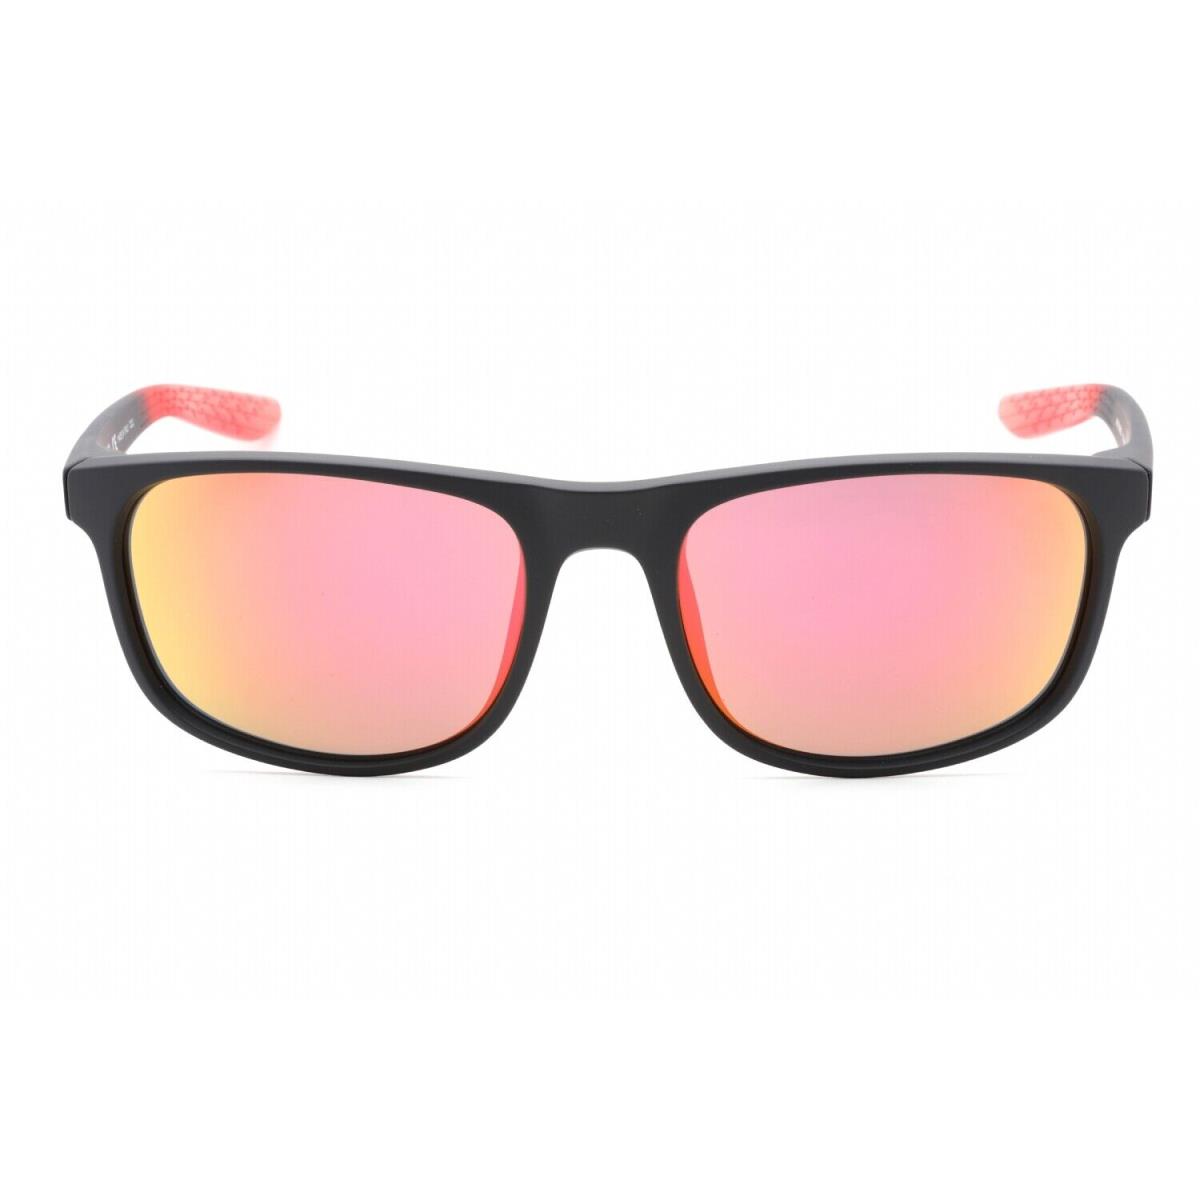 Nike Endure M MI CW4650 015 Sunglasses Matte Gridiron Frame Pink Lenses 59mm - Frame: , Lens: Pink